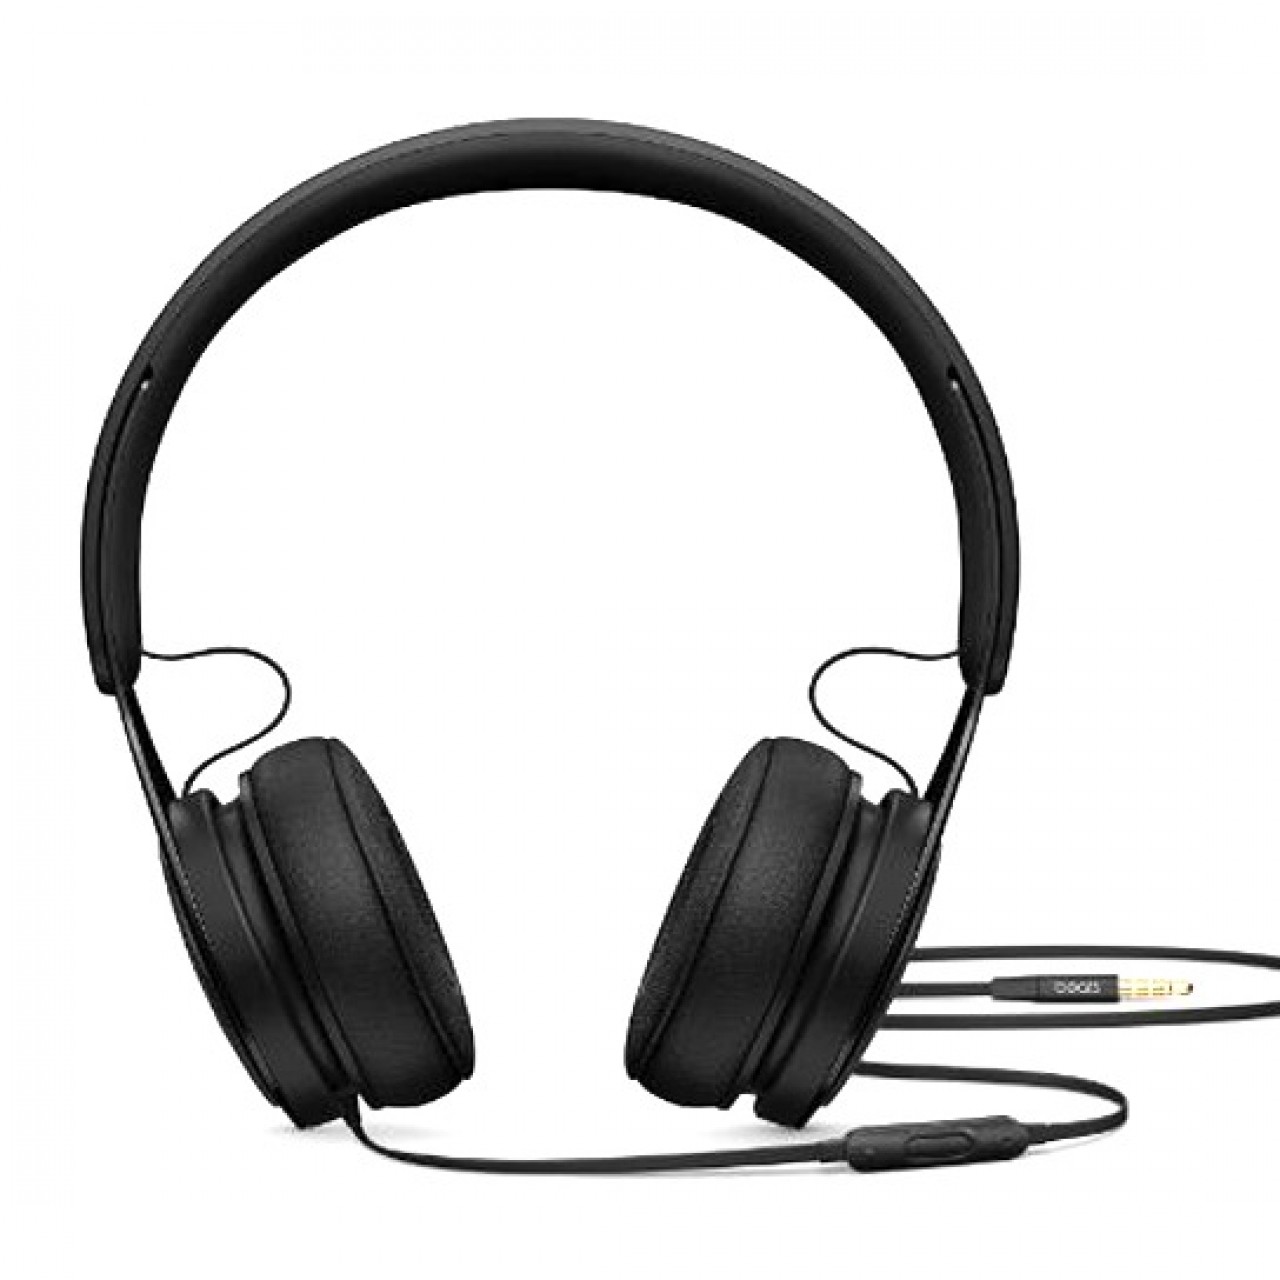 TM-030 Bluetooth Headphone - Black